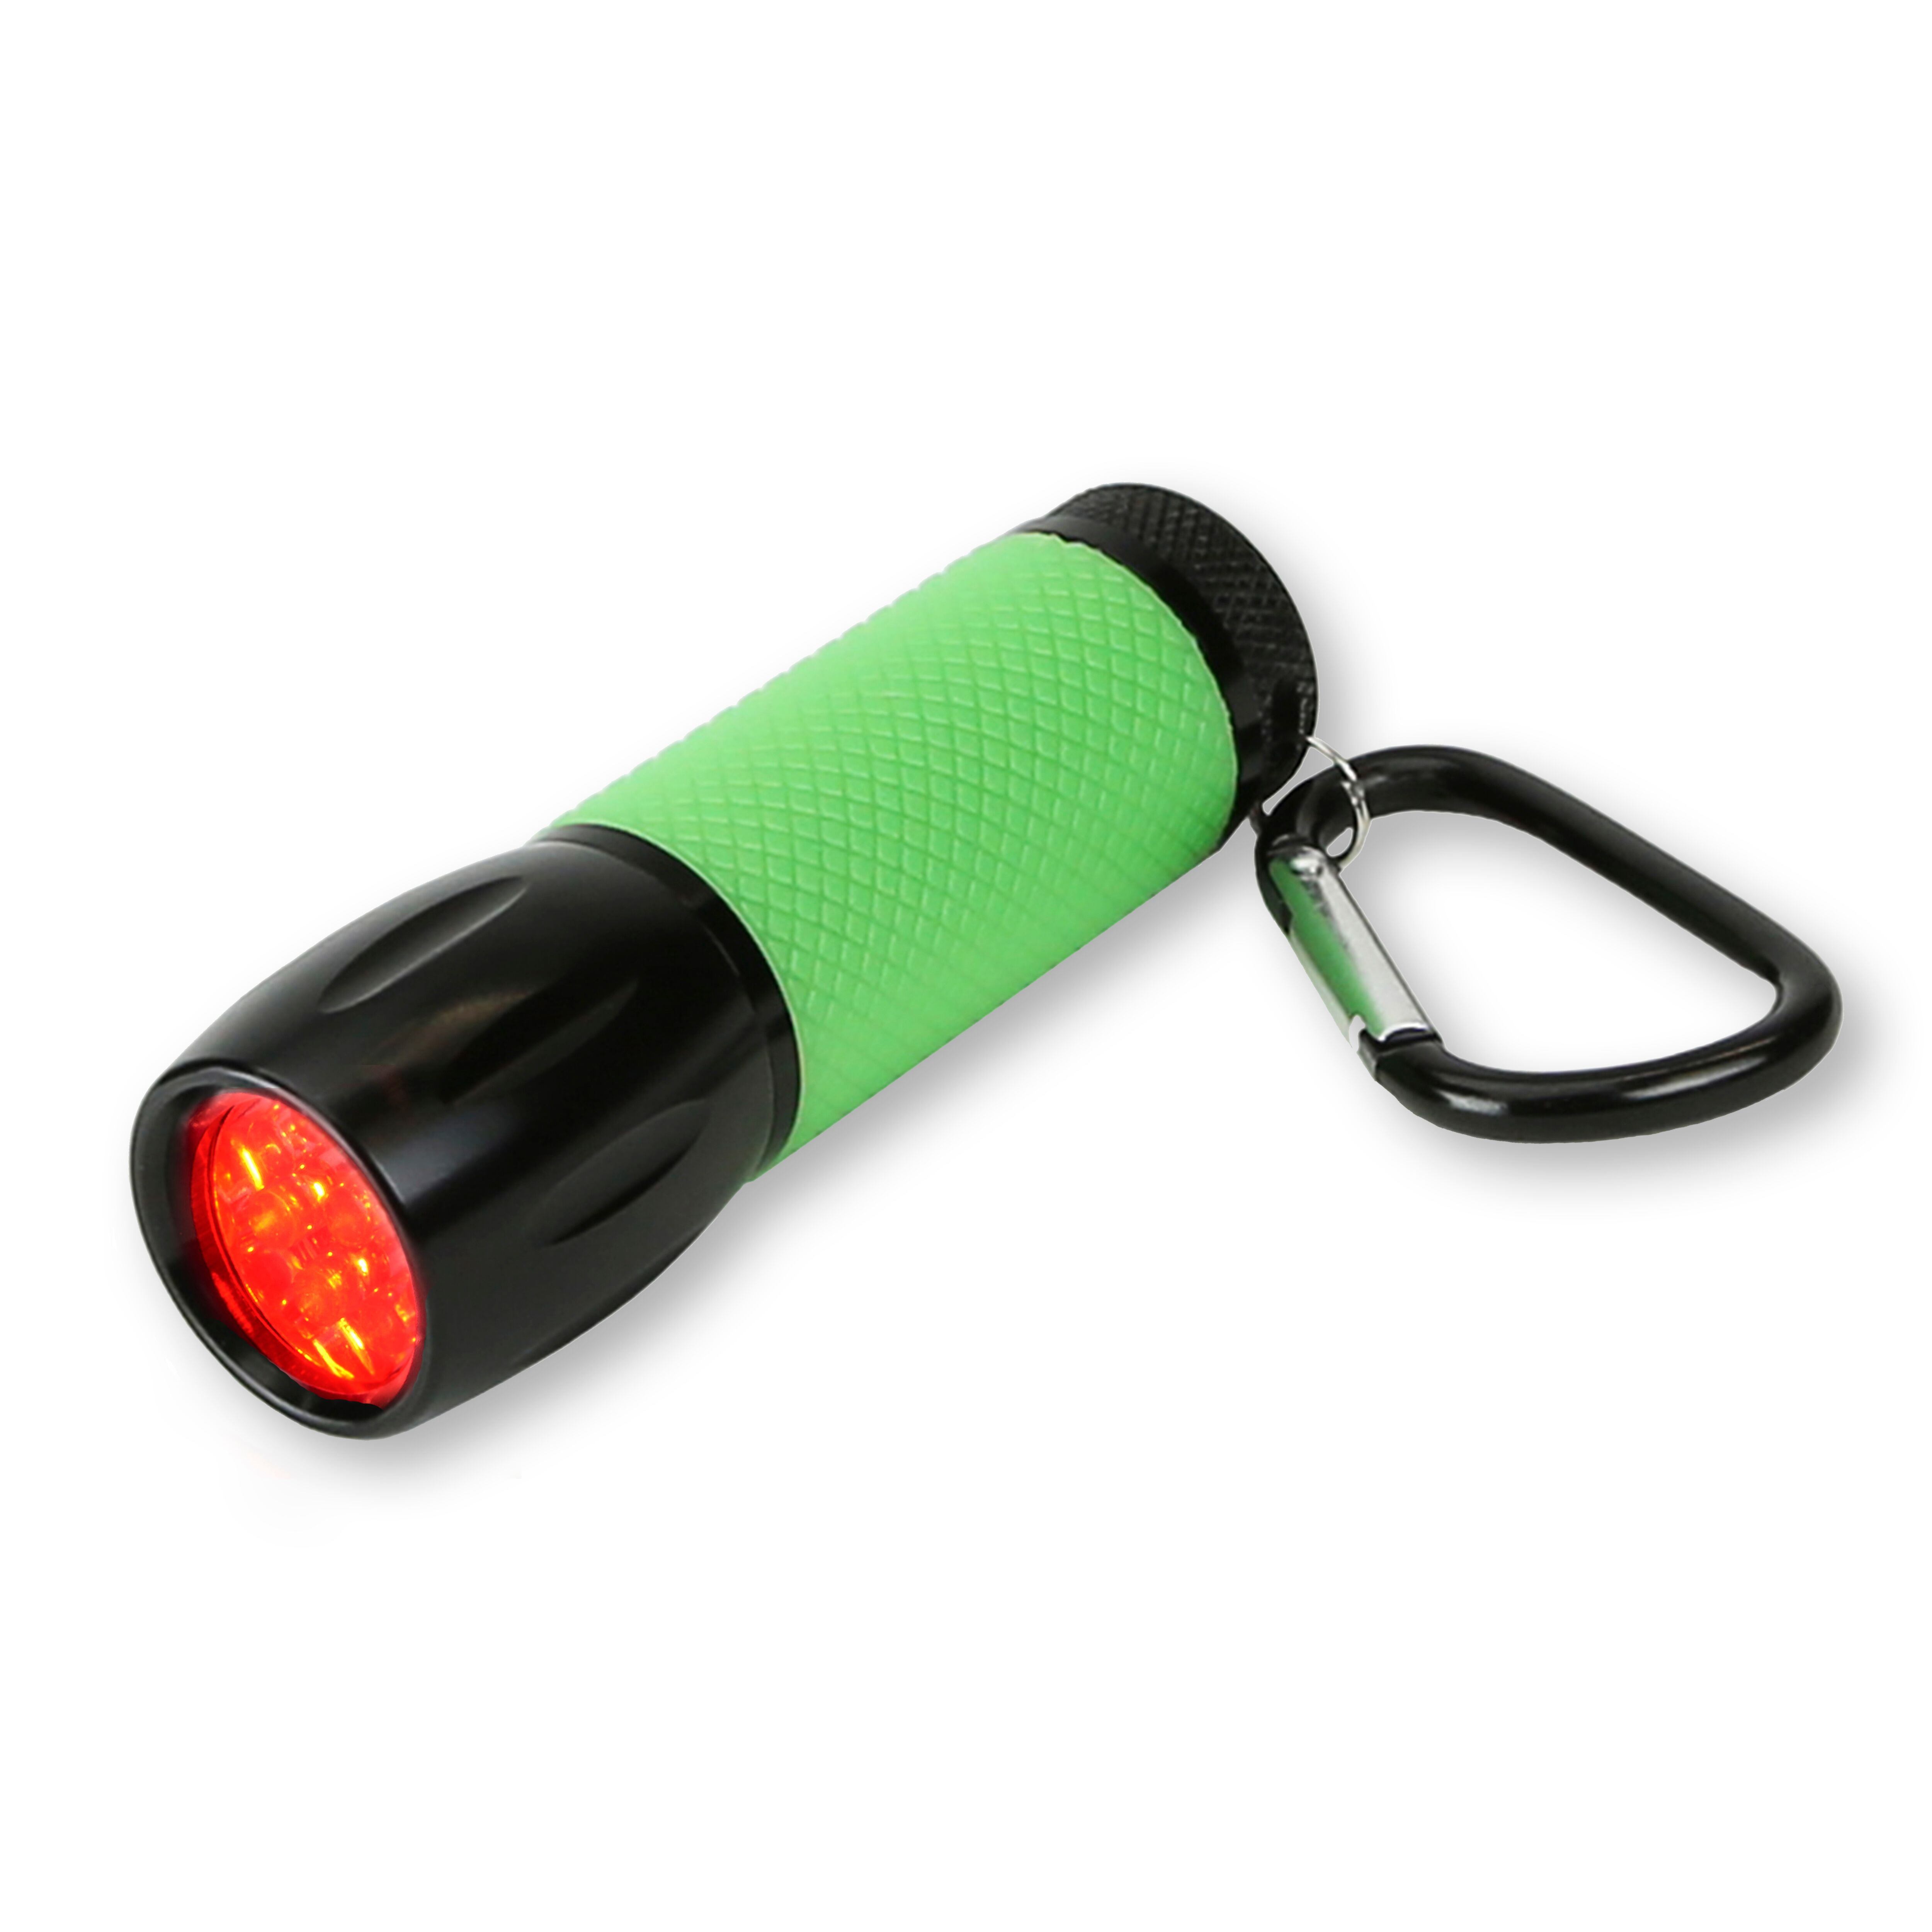 Lifeline AAA 4344AAA 3-LED Rechargeable Flashlight 